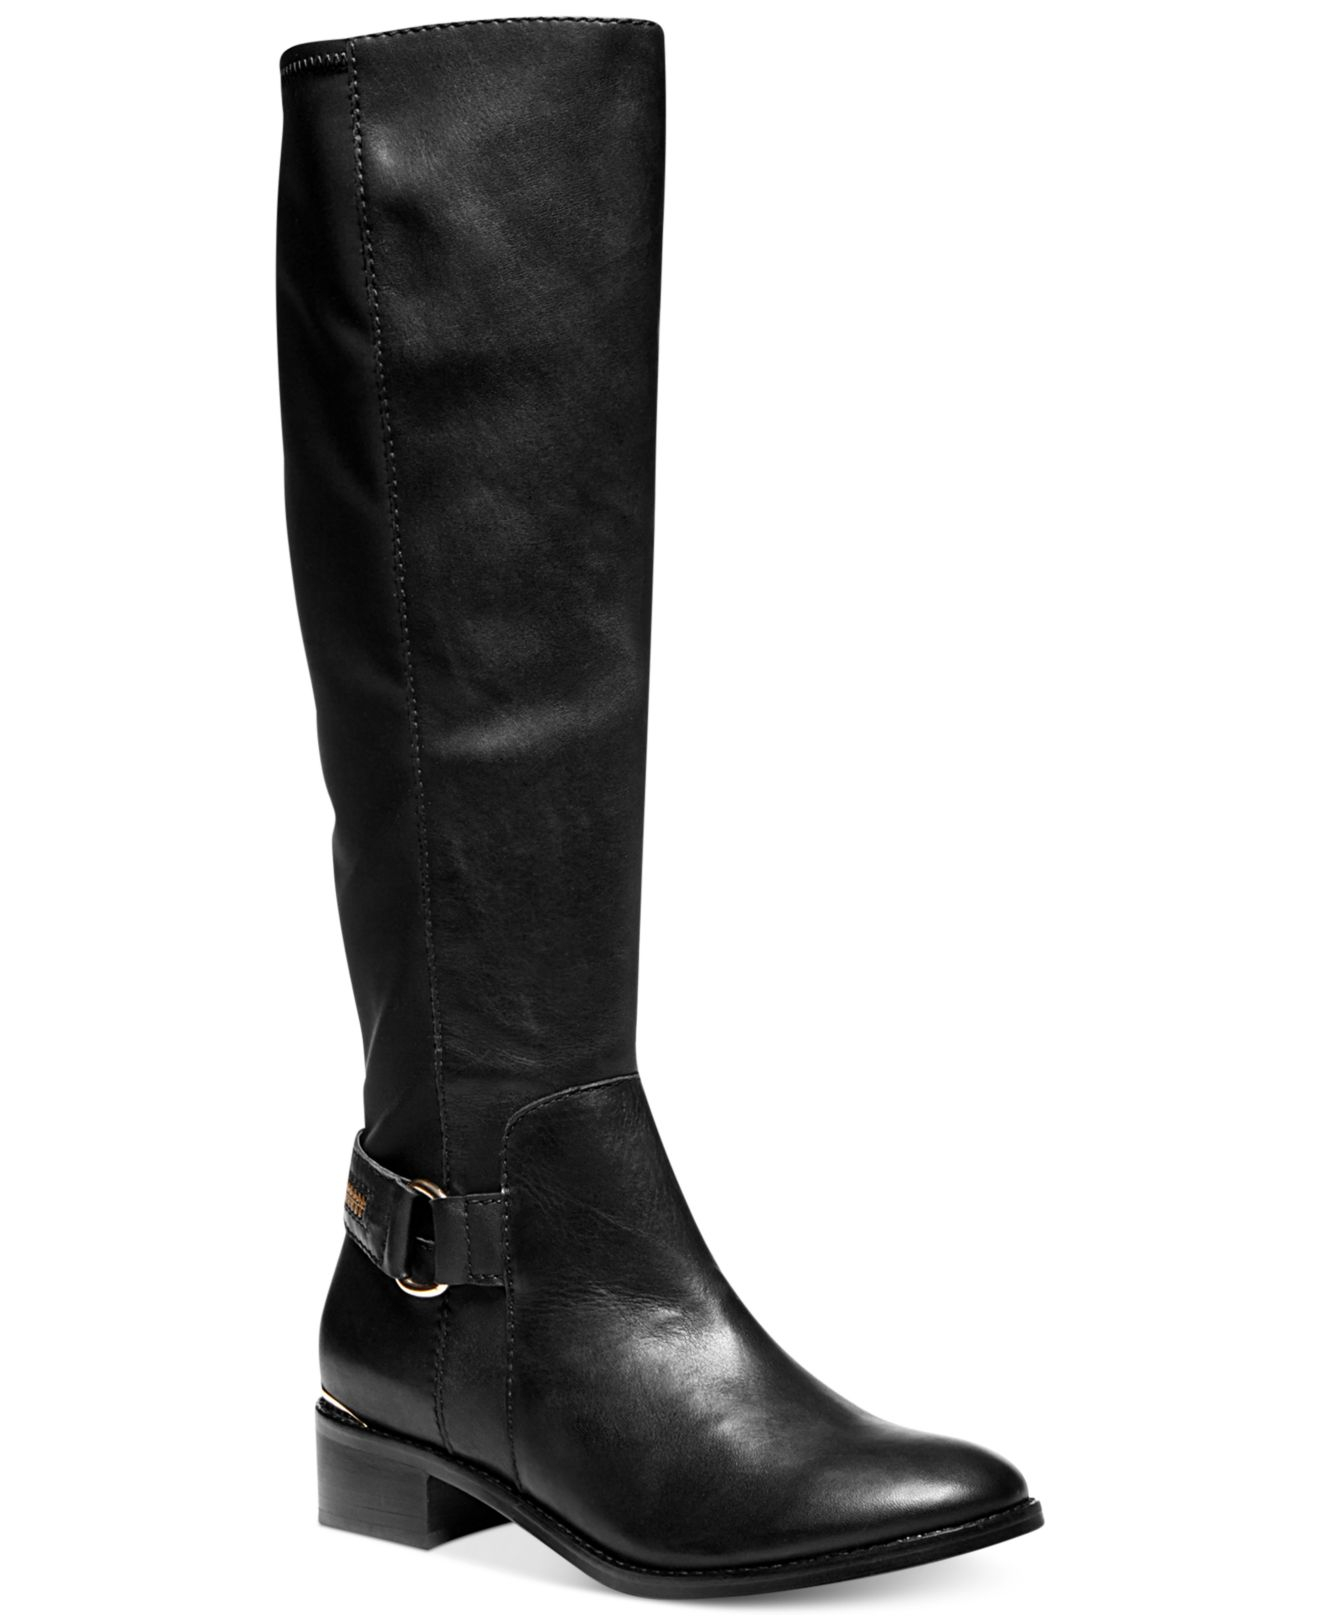 Lyst - Steve Madden Women'S Ryperr Tall Boots in Black